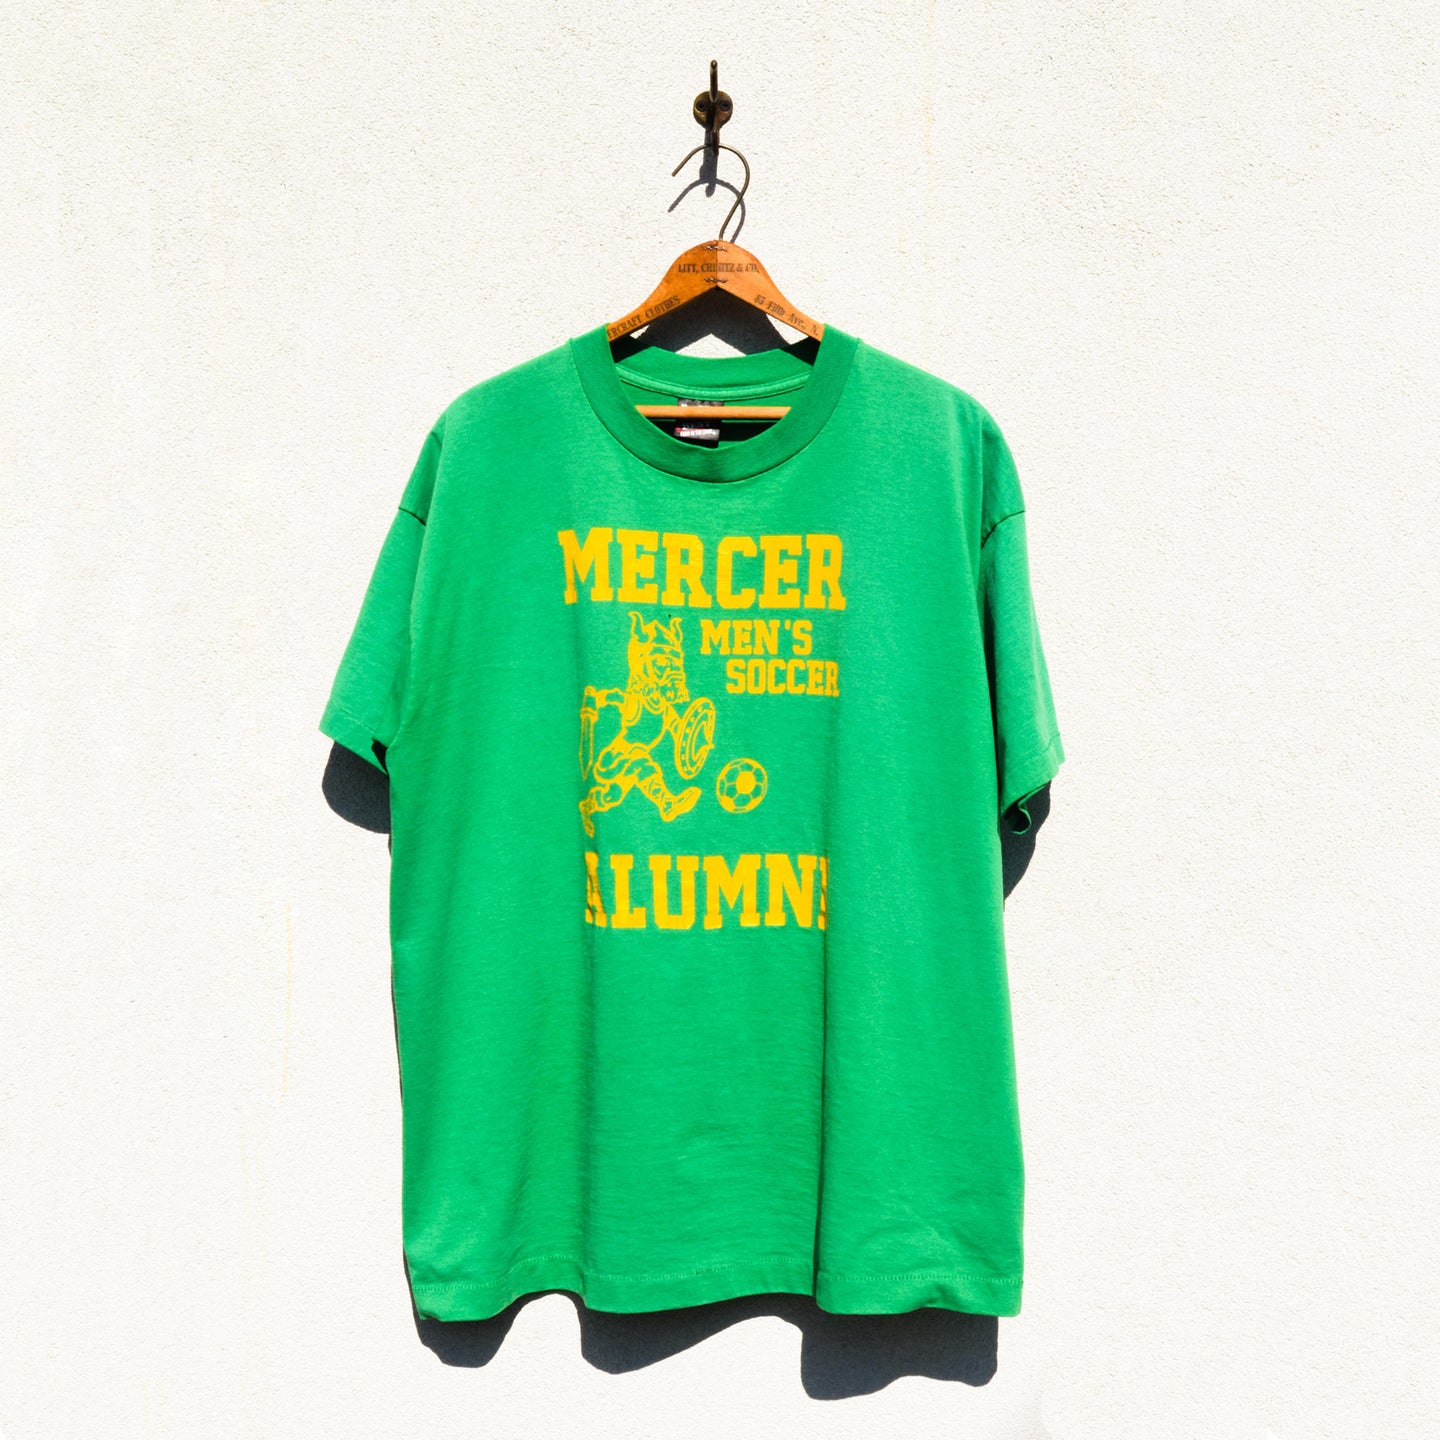 Fruit of the Loom - Mercer Alumni Men’s Soccer Team Print Tee Shirt